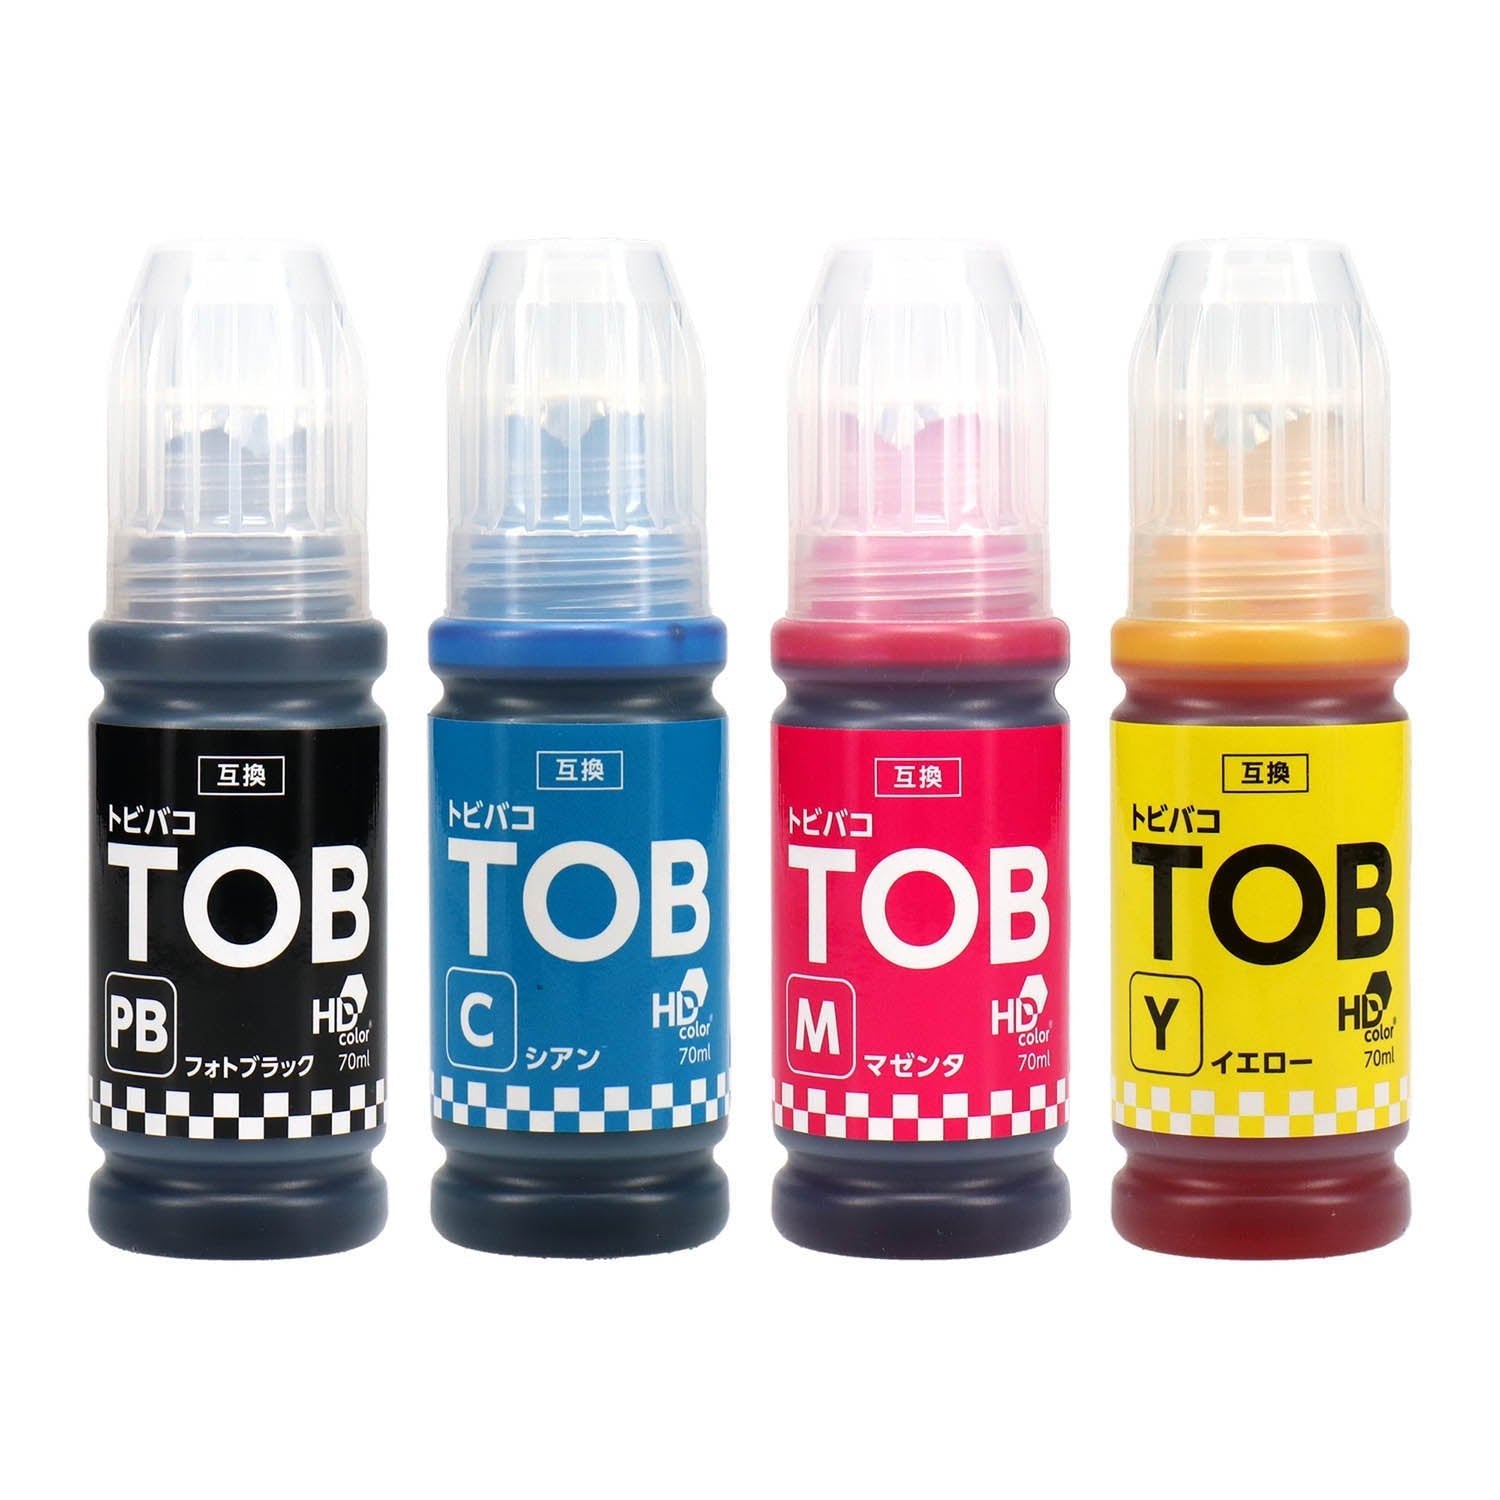 エプソン用 TOB (トビバコ) 互換インクボトル フォトブラック＋カラー3色